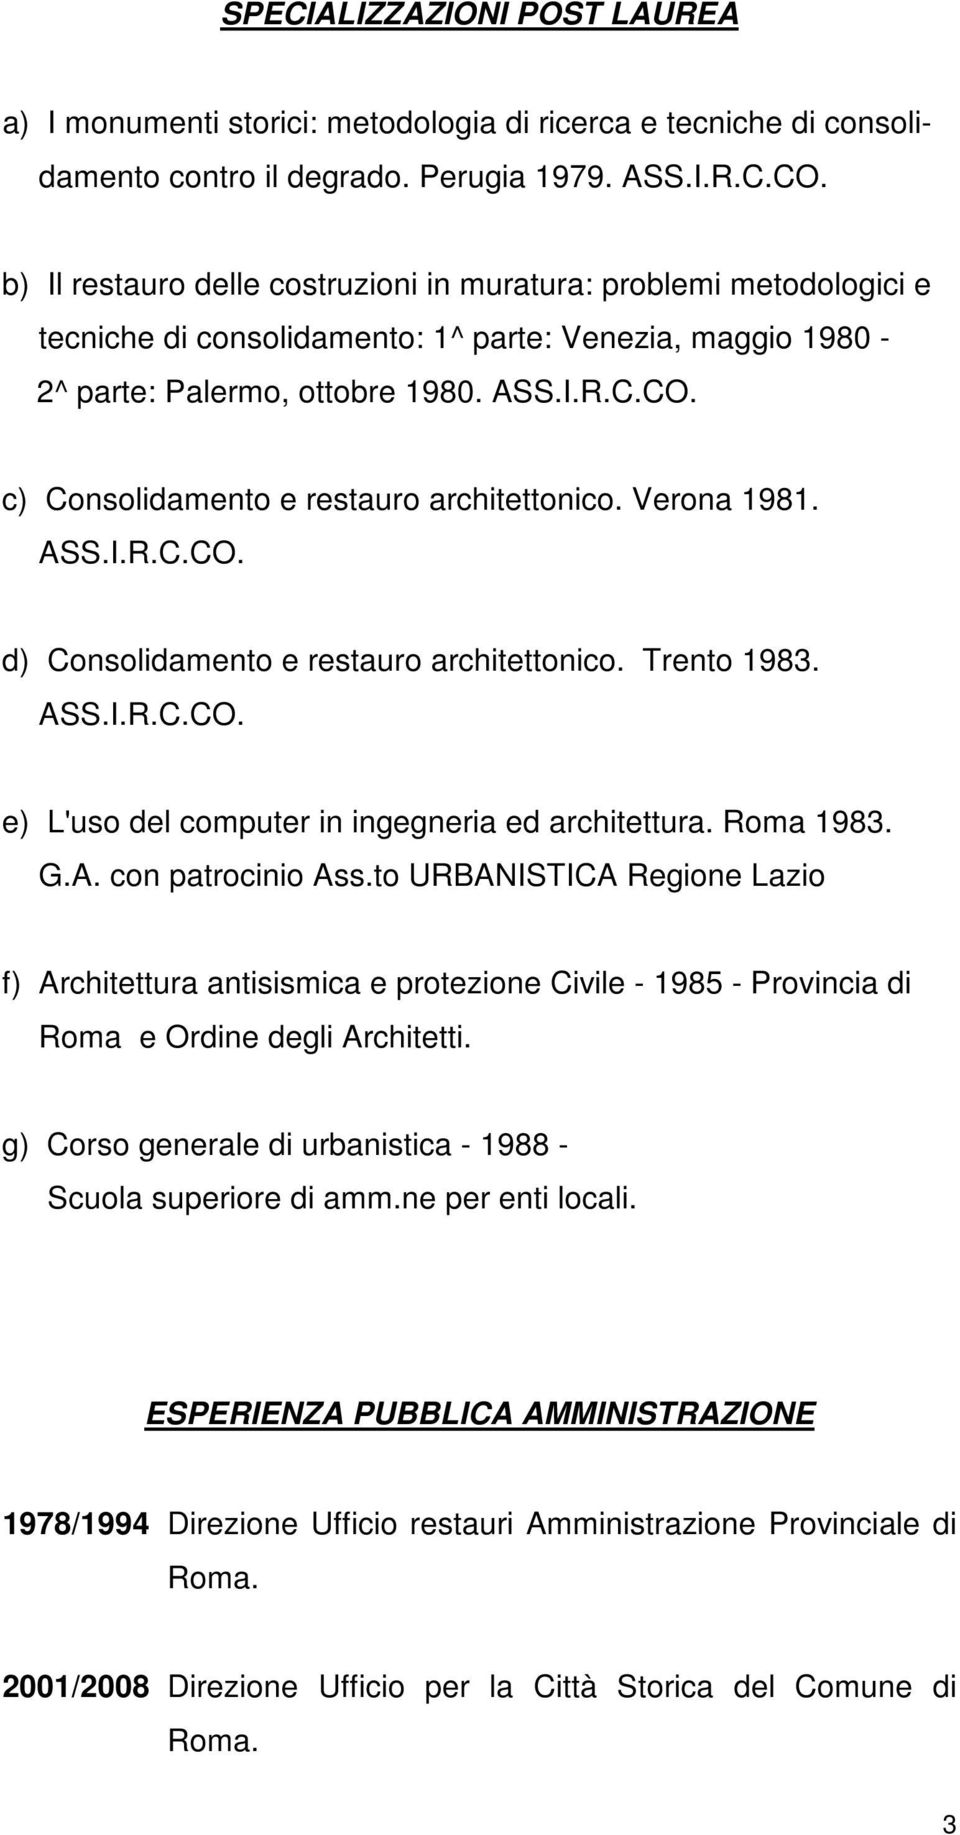 c) Consolidamento e restauro architettonico. Verona 1981. ASS.I.R.C.CO. d) Consolidamento e restauro architettonico. Trento 1983. ASS.I.R.C.CO. e) L'uso del computer in ingegneria ed architettura.